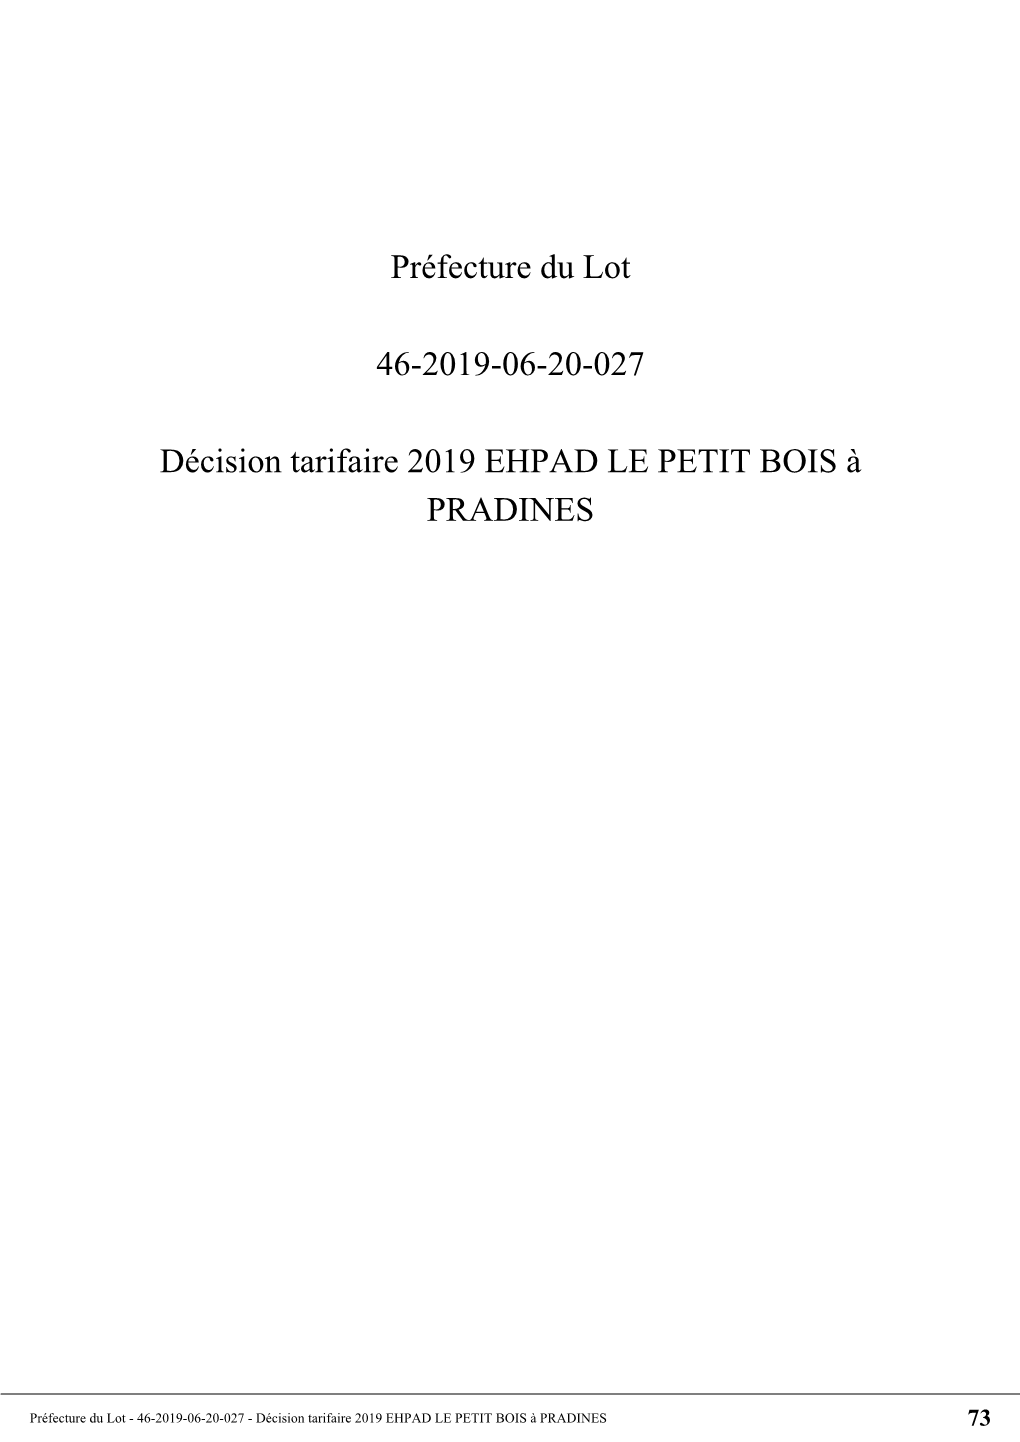 Préfecture Du Lot 46-2019-06-20-027 Décision Tarifaire 2019 EHPAD LE